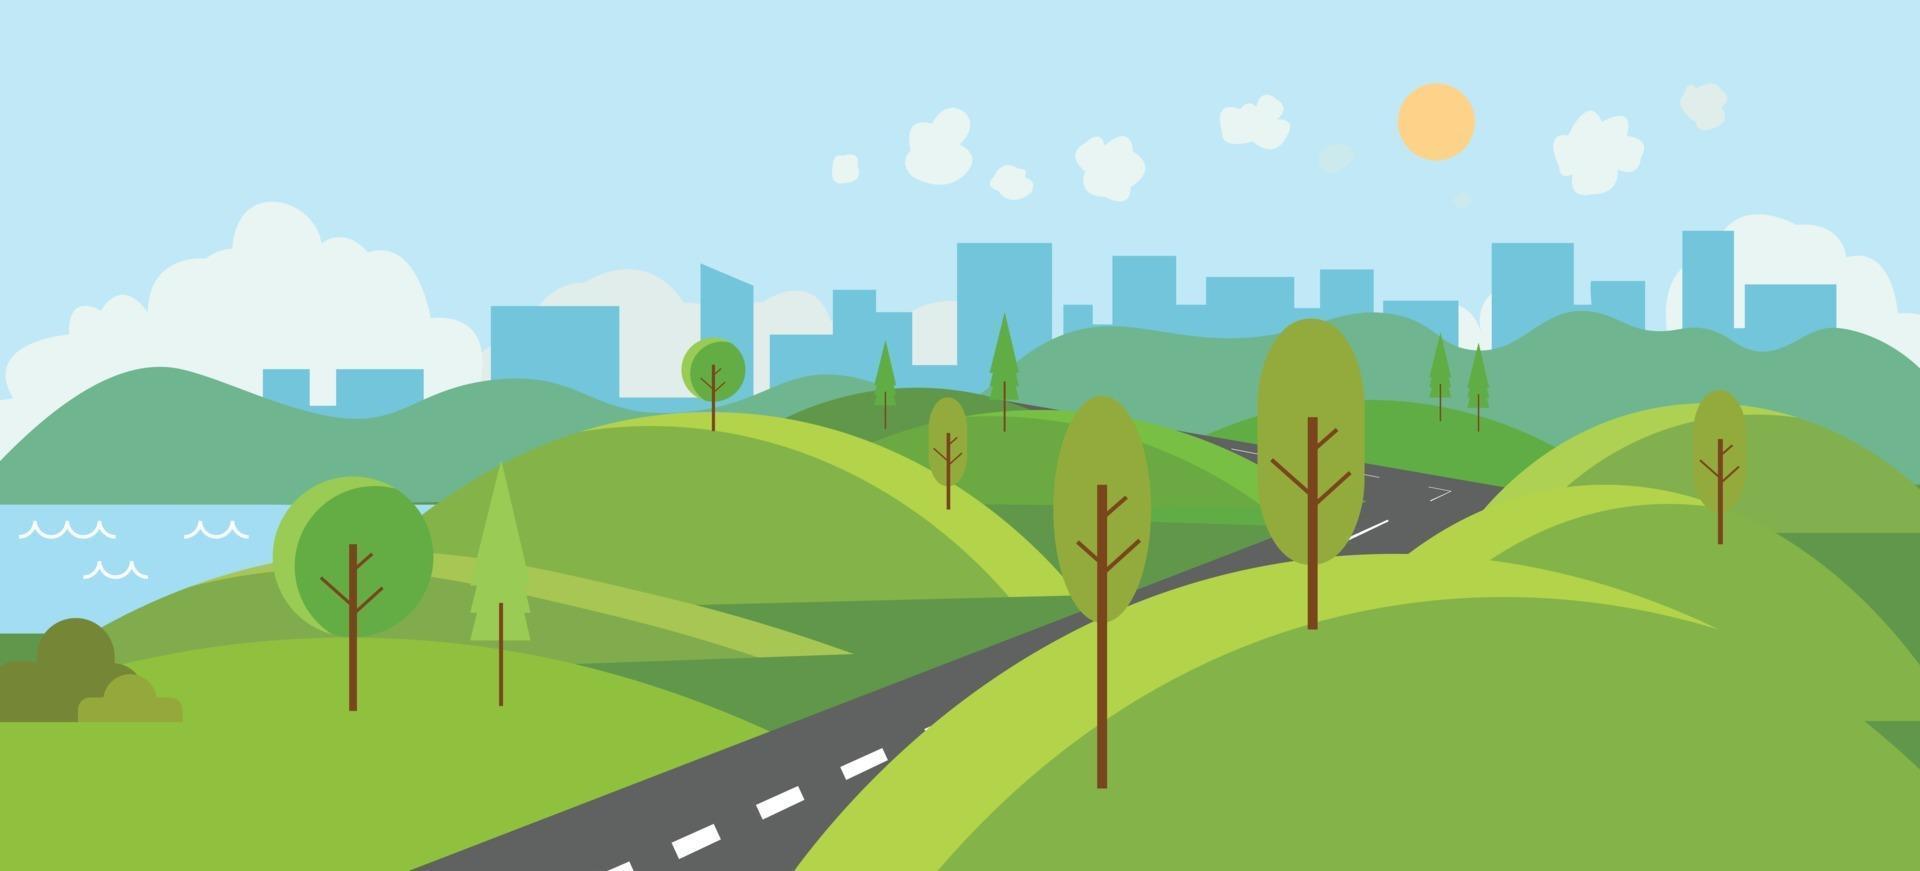 parc public avec rivière et route vers city.vector illustration.cartoon scène de la nature avec des collines et des arbres.nature paysage avec urbain avec fond de ciel vecteur